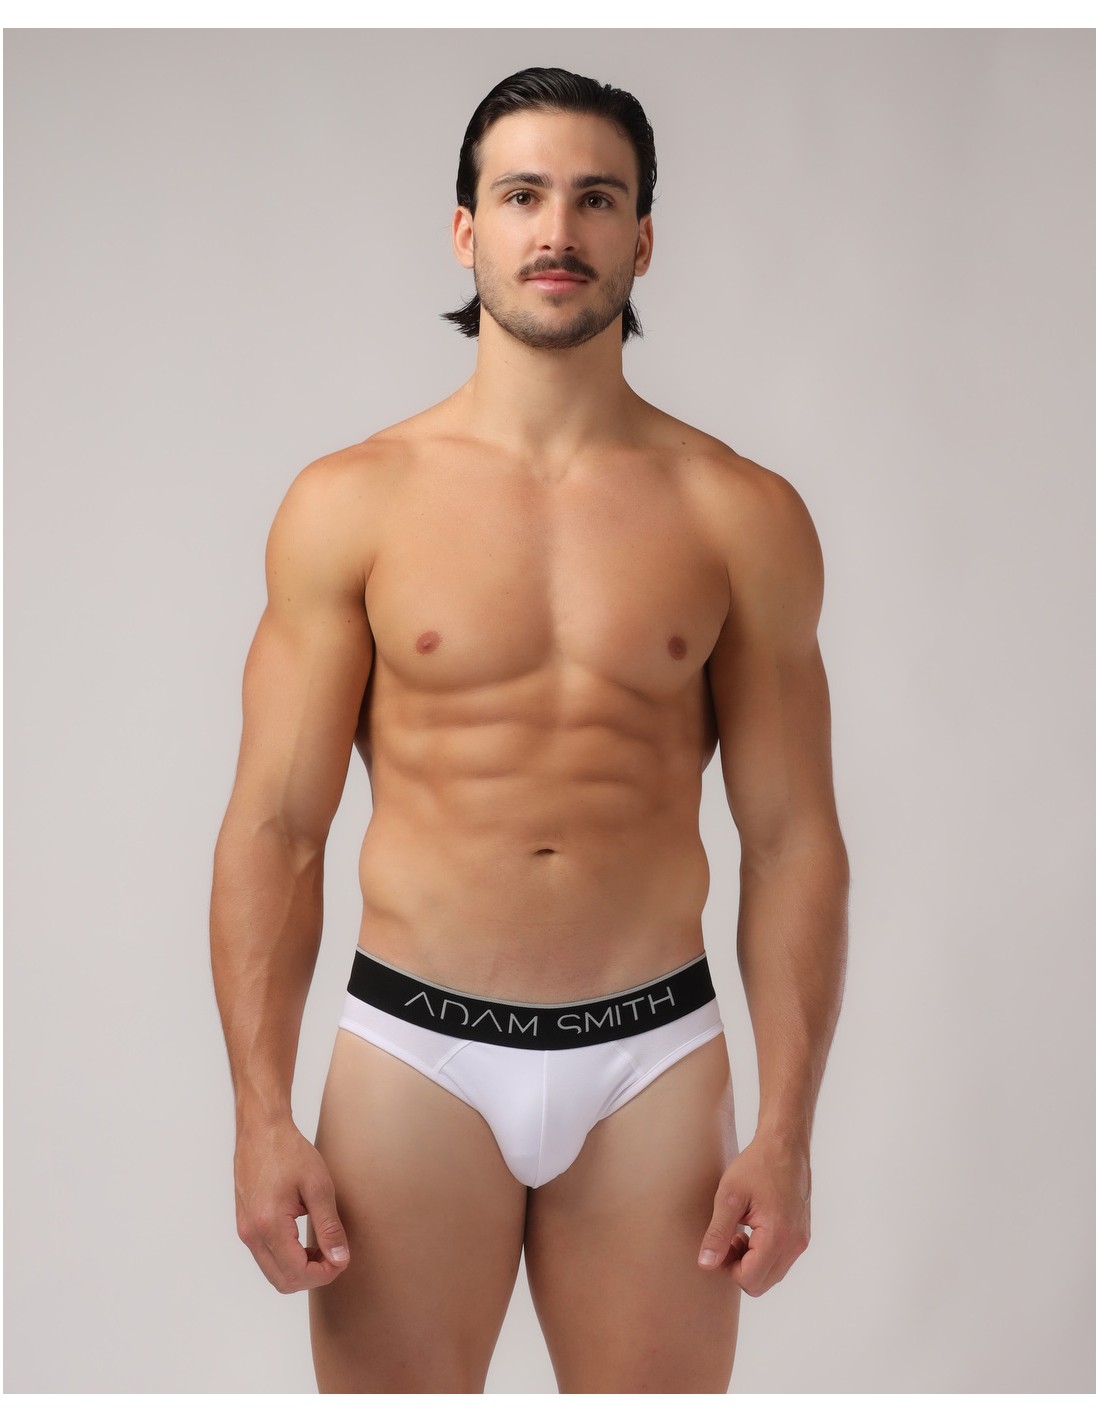 https://menandunderwear.com/shop/2543-thickbox_default/adam-smith-classic-briefs-white.jpg